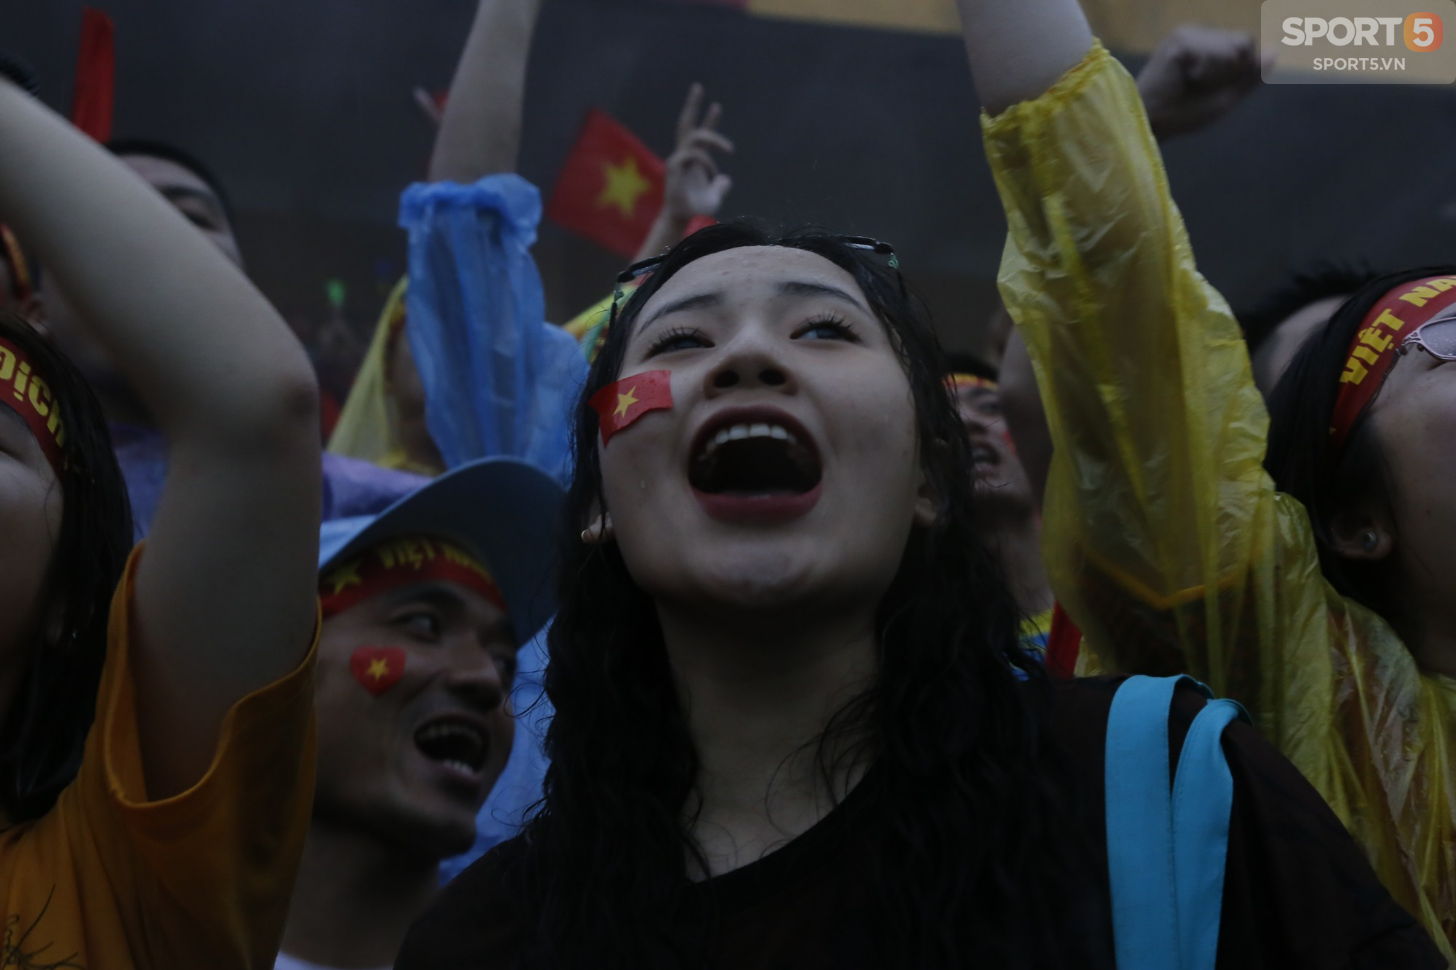 Mặc kệ thắng thua, mưa gió, người hâm mộ vẫn cháy hết mình vì một Olympic Việt Nam bất khuất - Ảnh 11.